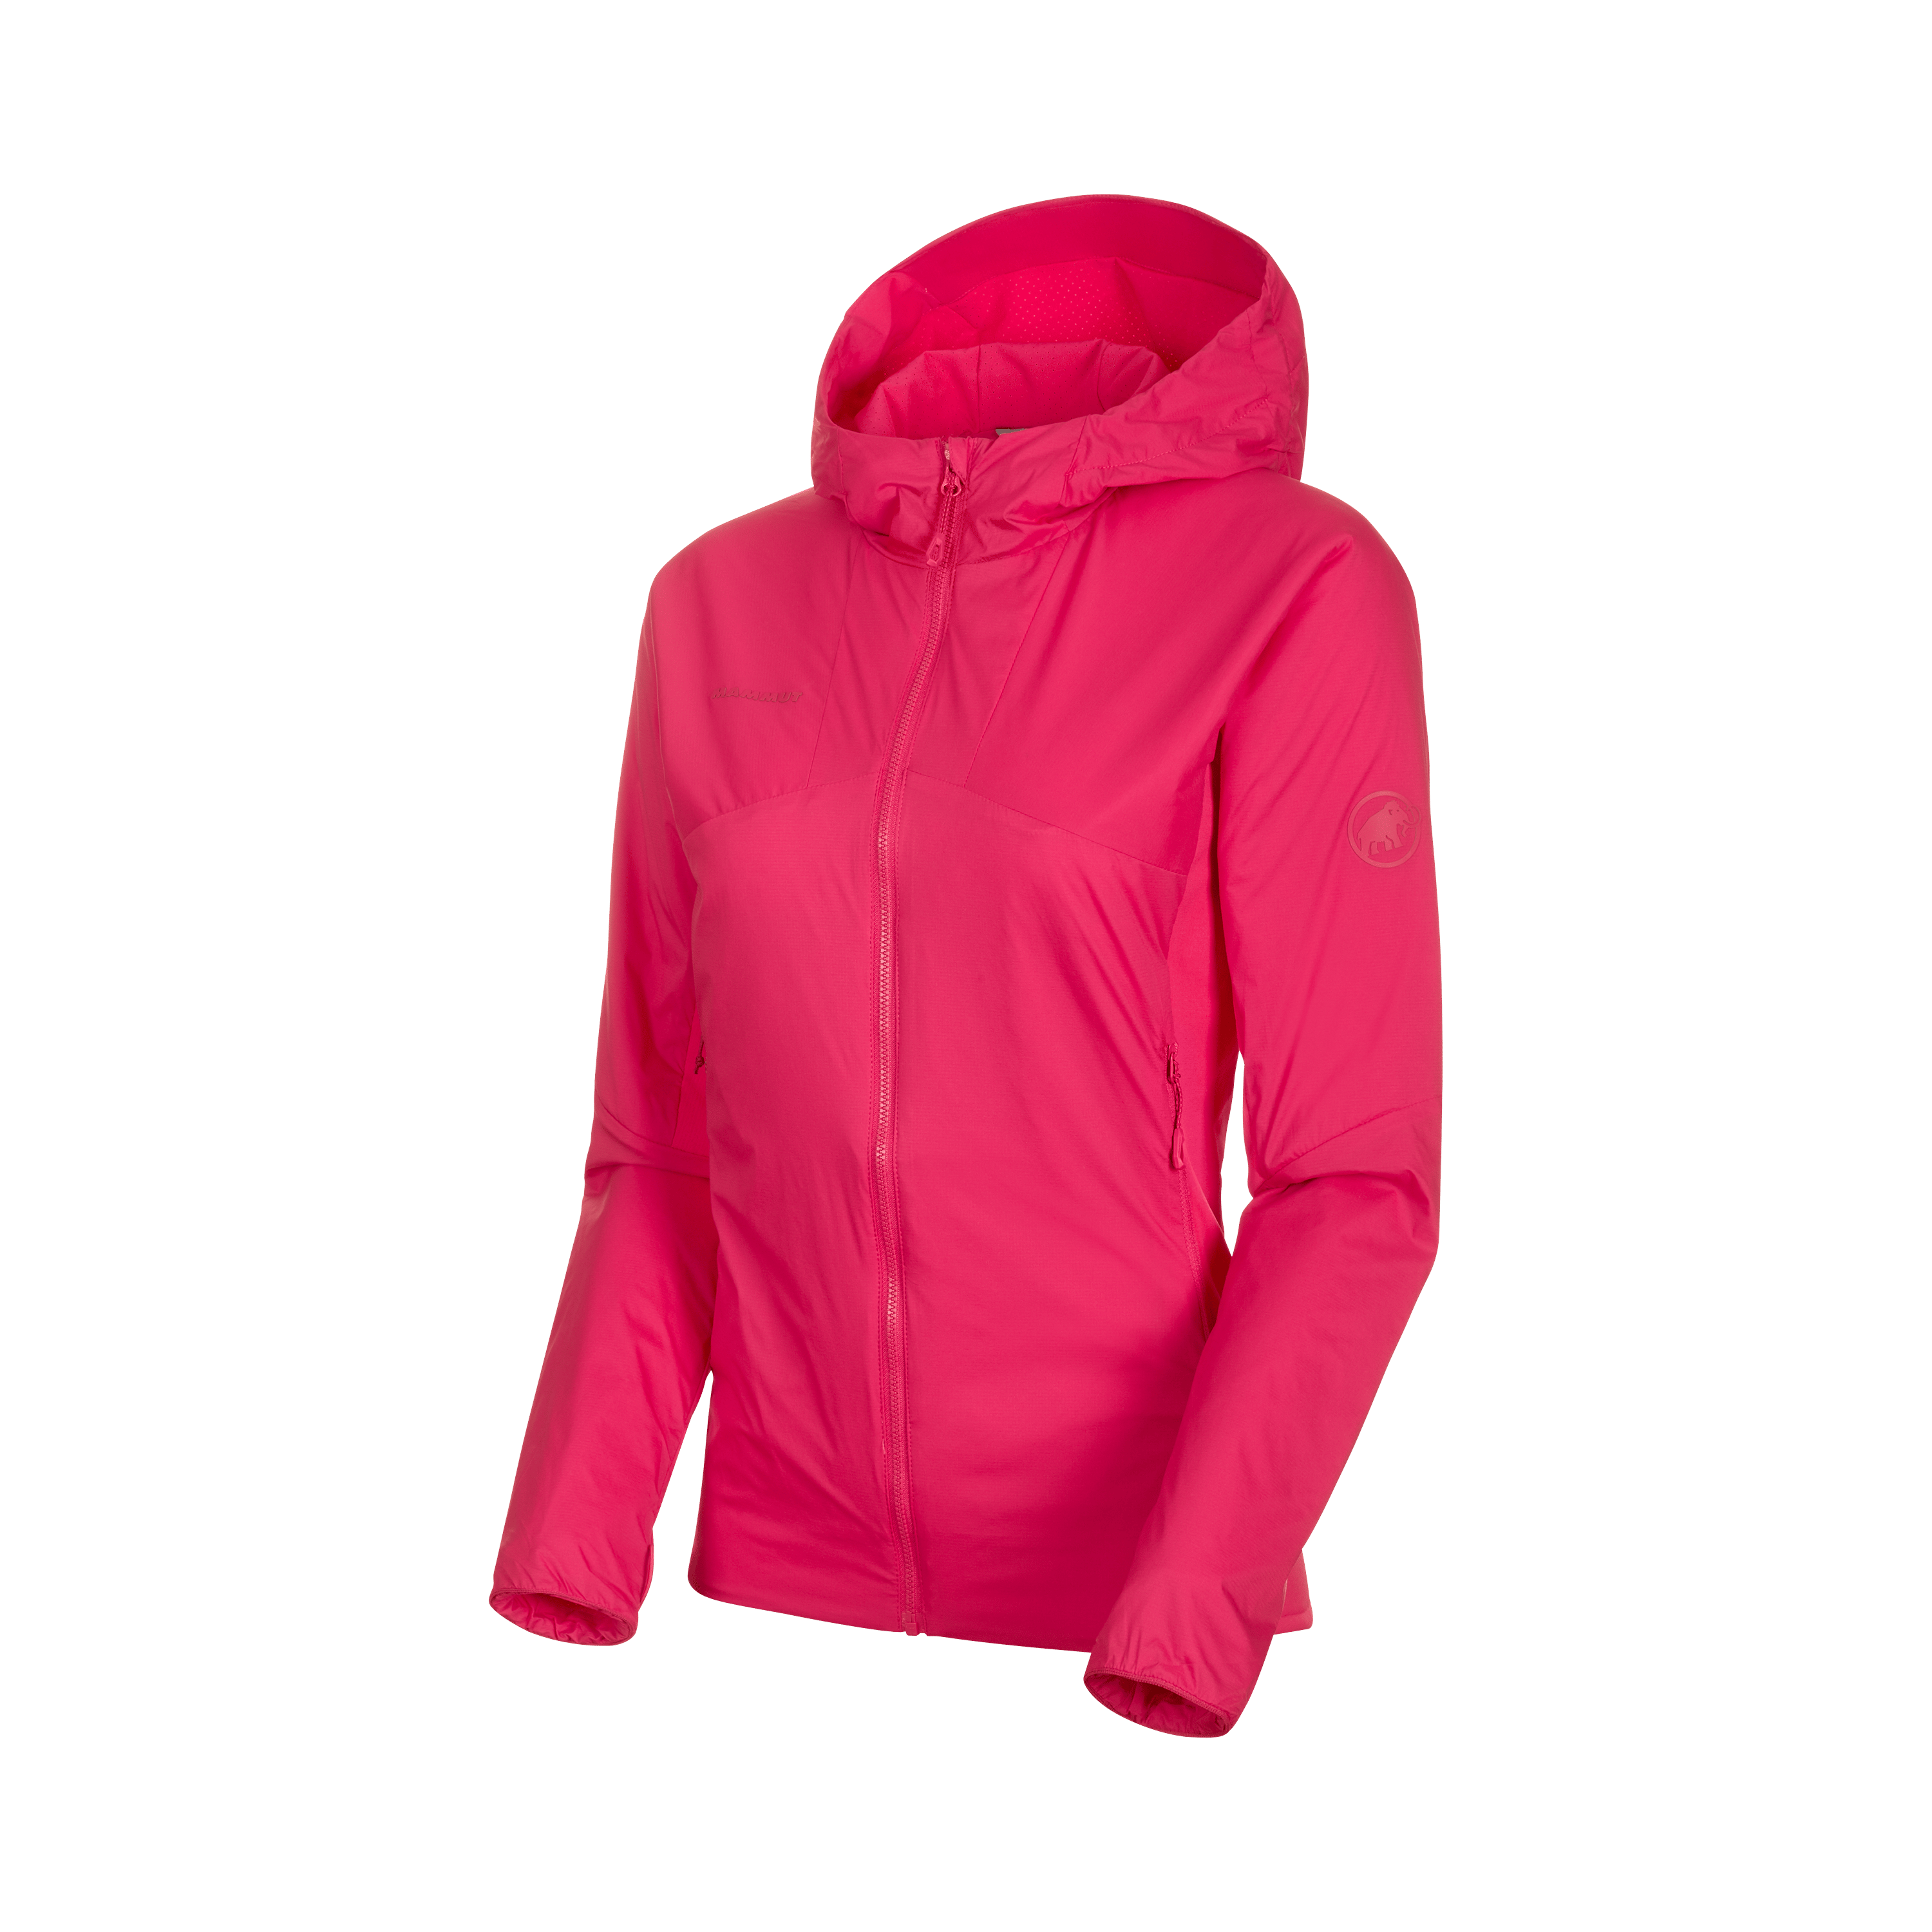 Rime Light IN Flex Hooded Jacket Women